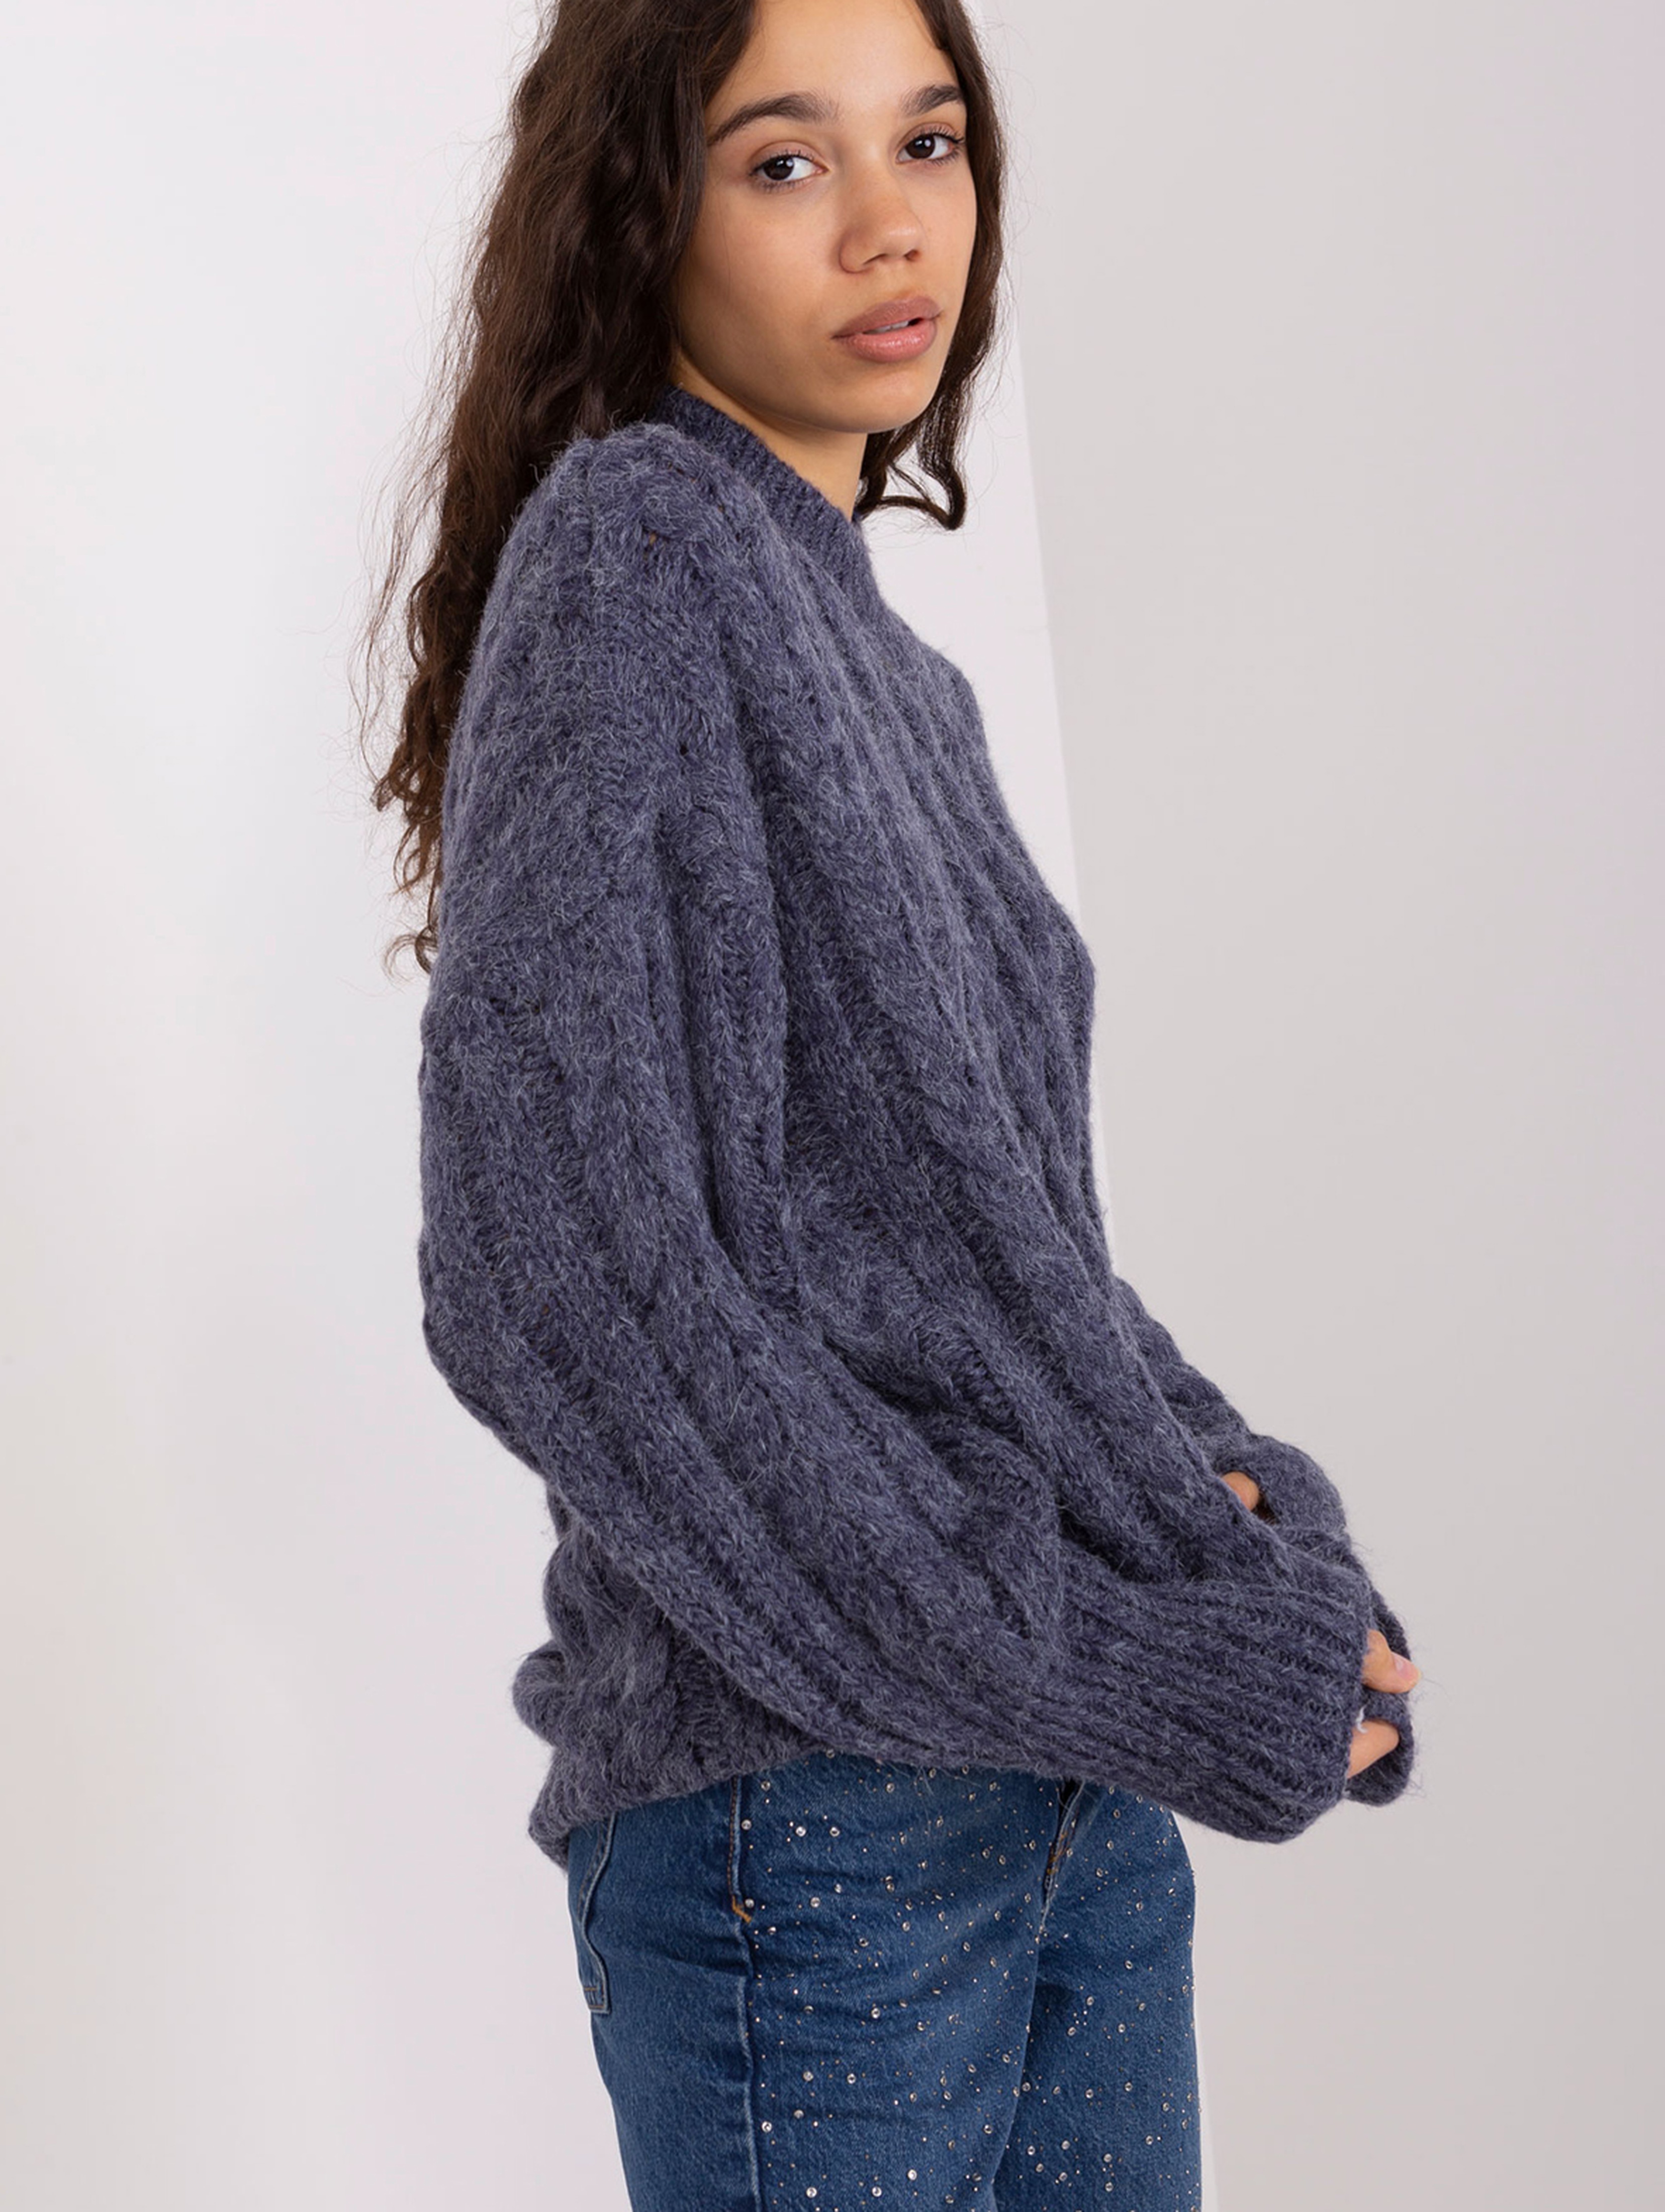 Granatowy dzianinowy sweter z warkoczami